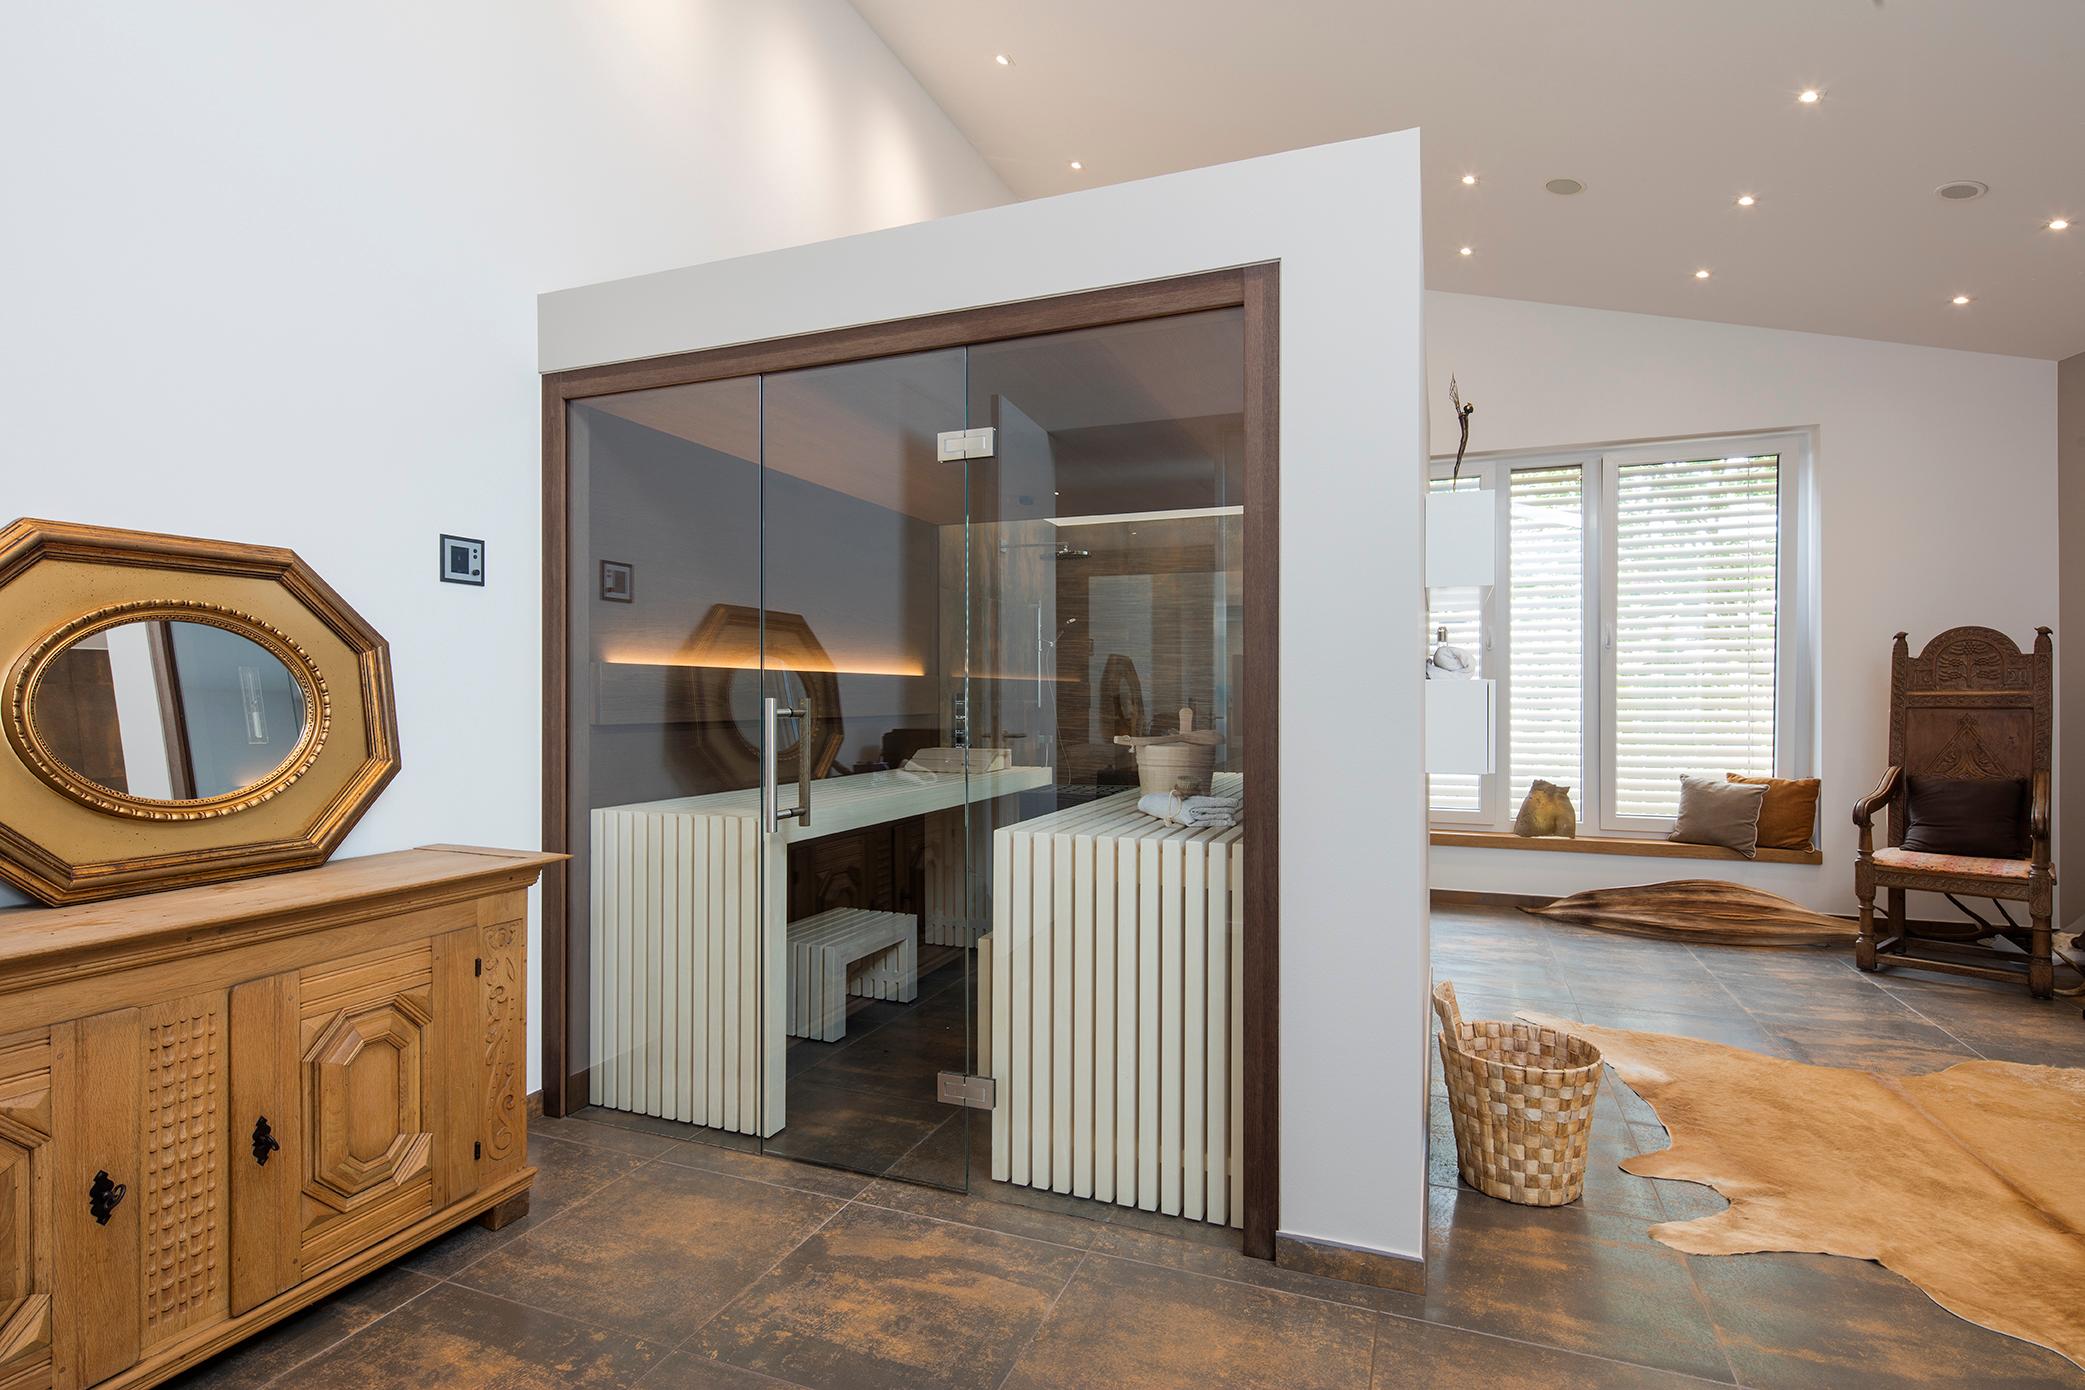 Design-Sauna im Bad #sauna #badsauna #zimmergestaltung ©Tom Bendix für corso sauna manufaktur